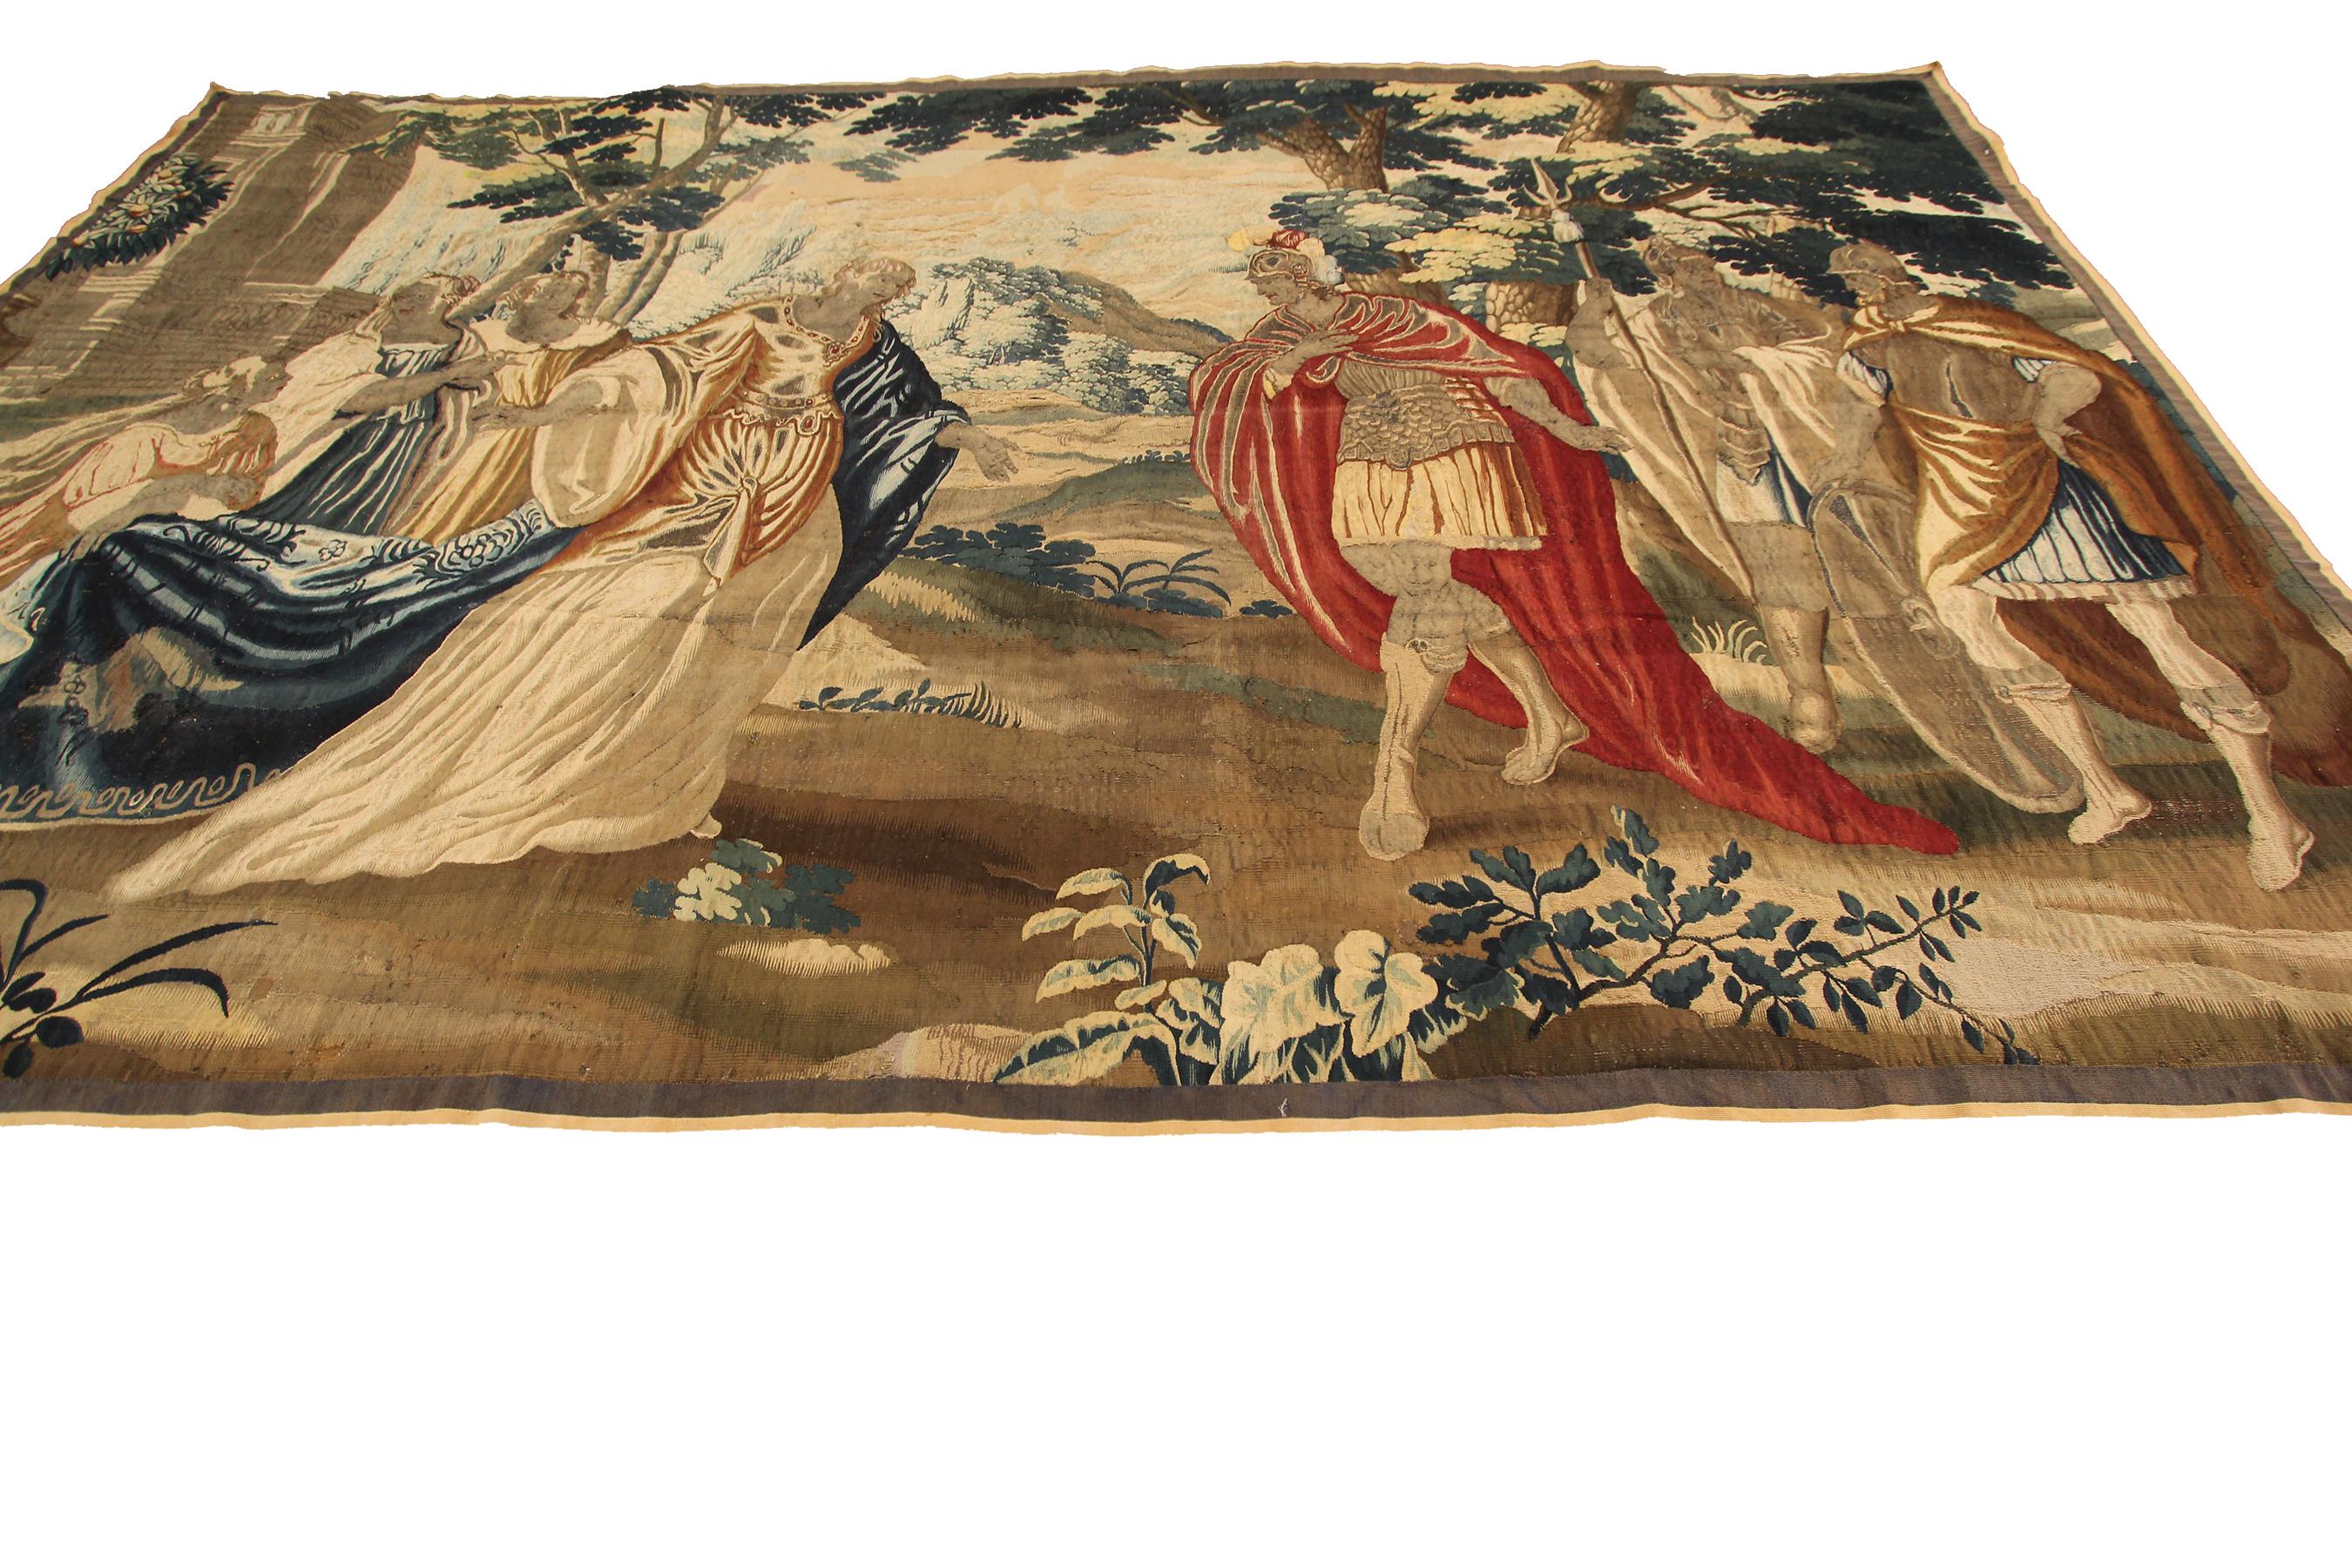 17th. Siècle rare tapisserie française ancienne fine laine & soie 5'9